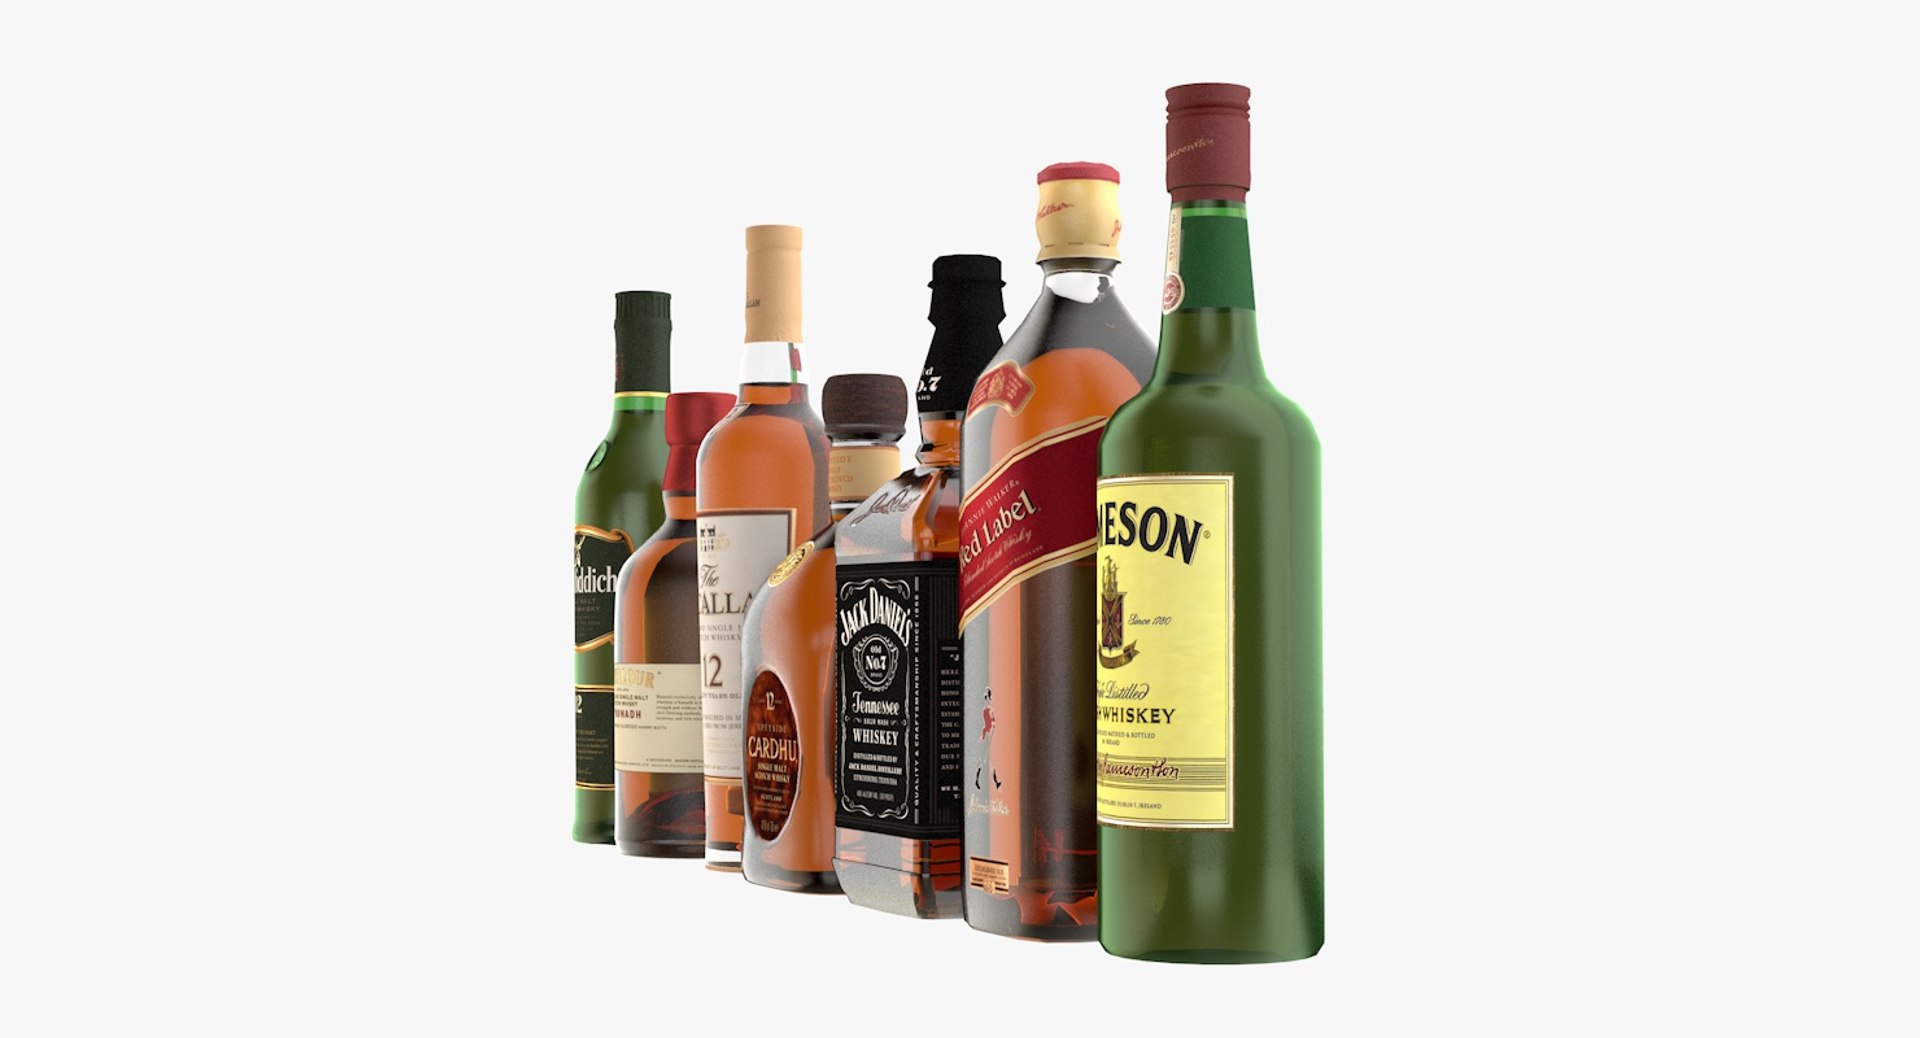 Bouteille whisky : 66 299 images, photos de stock, objets 3D et images  vectorielles